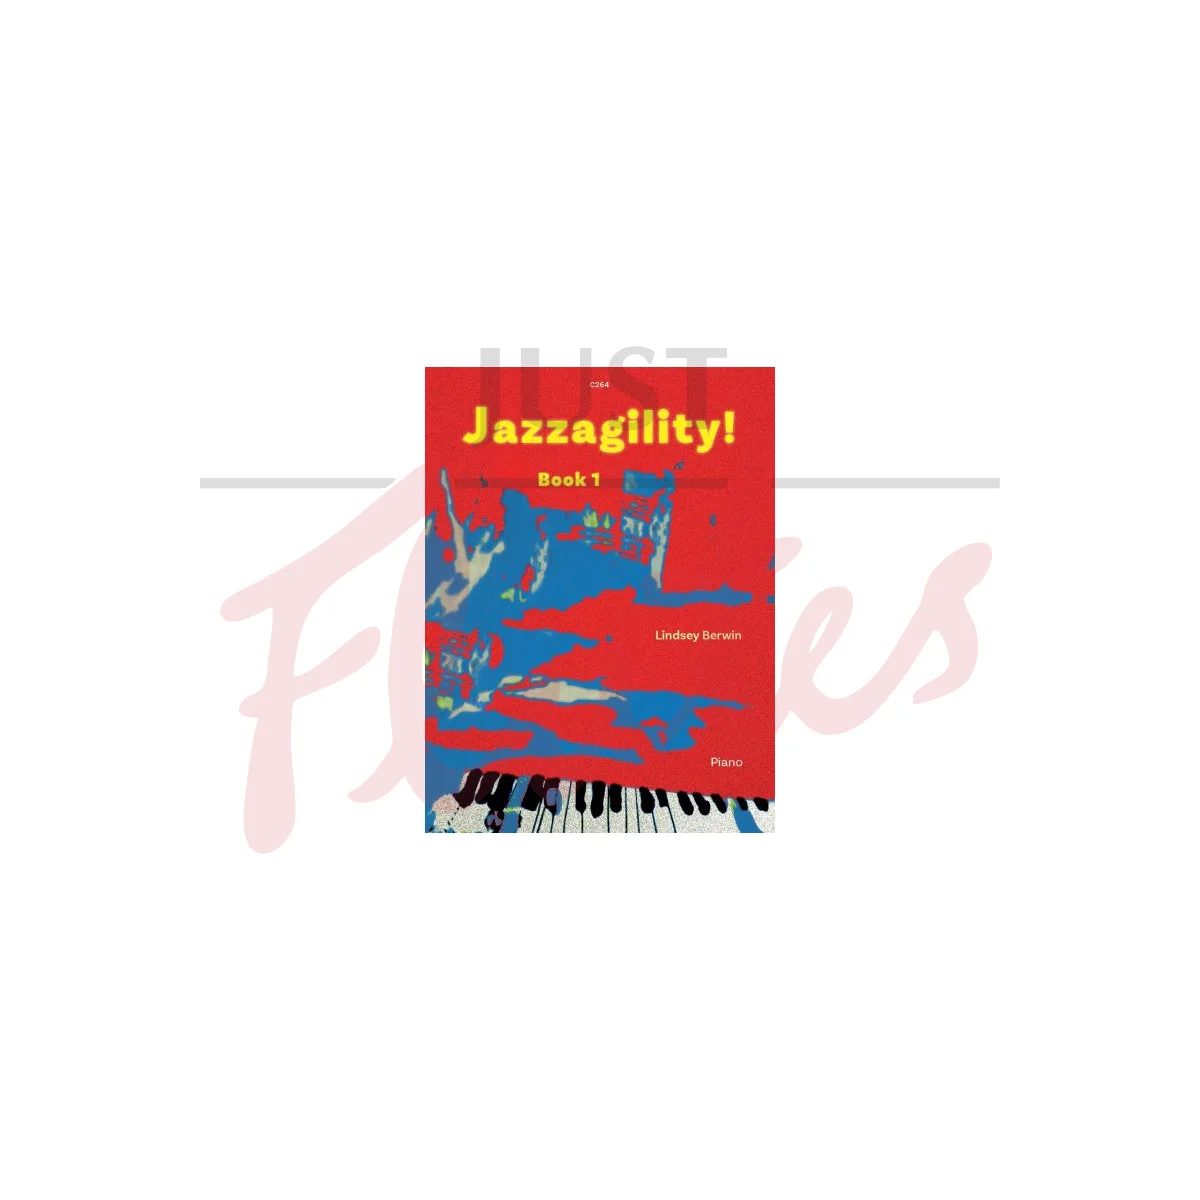 Jazzagility Book 1 for Piano